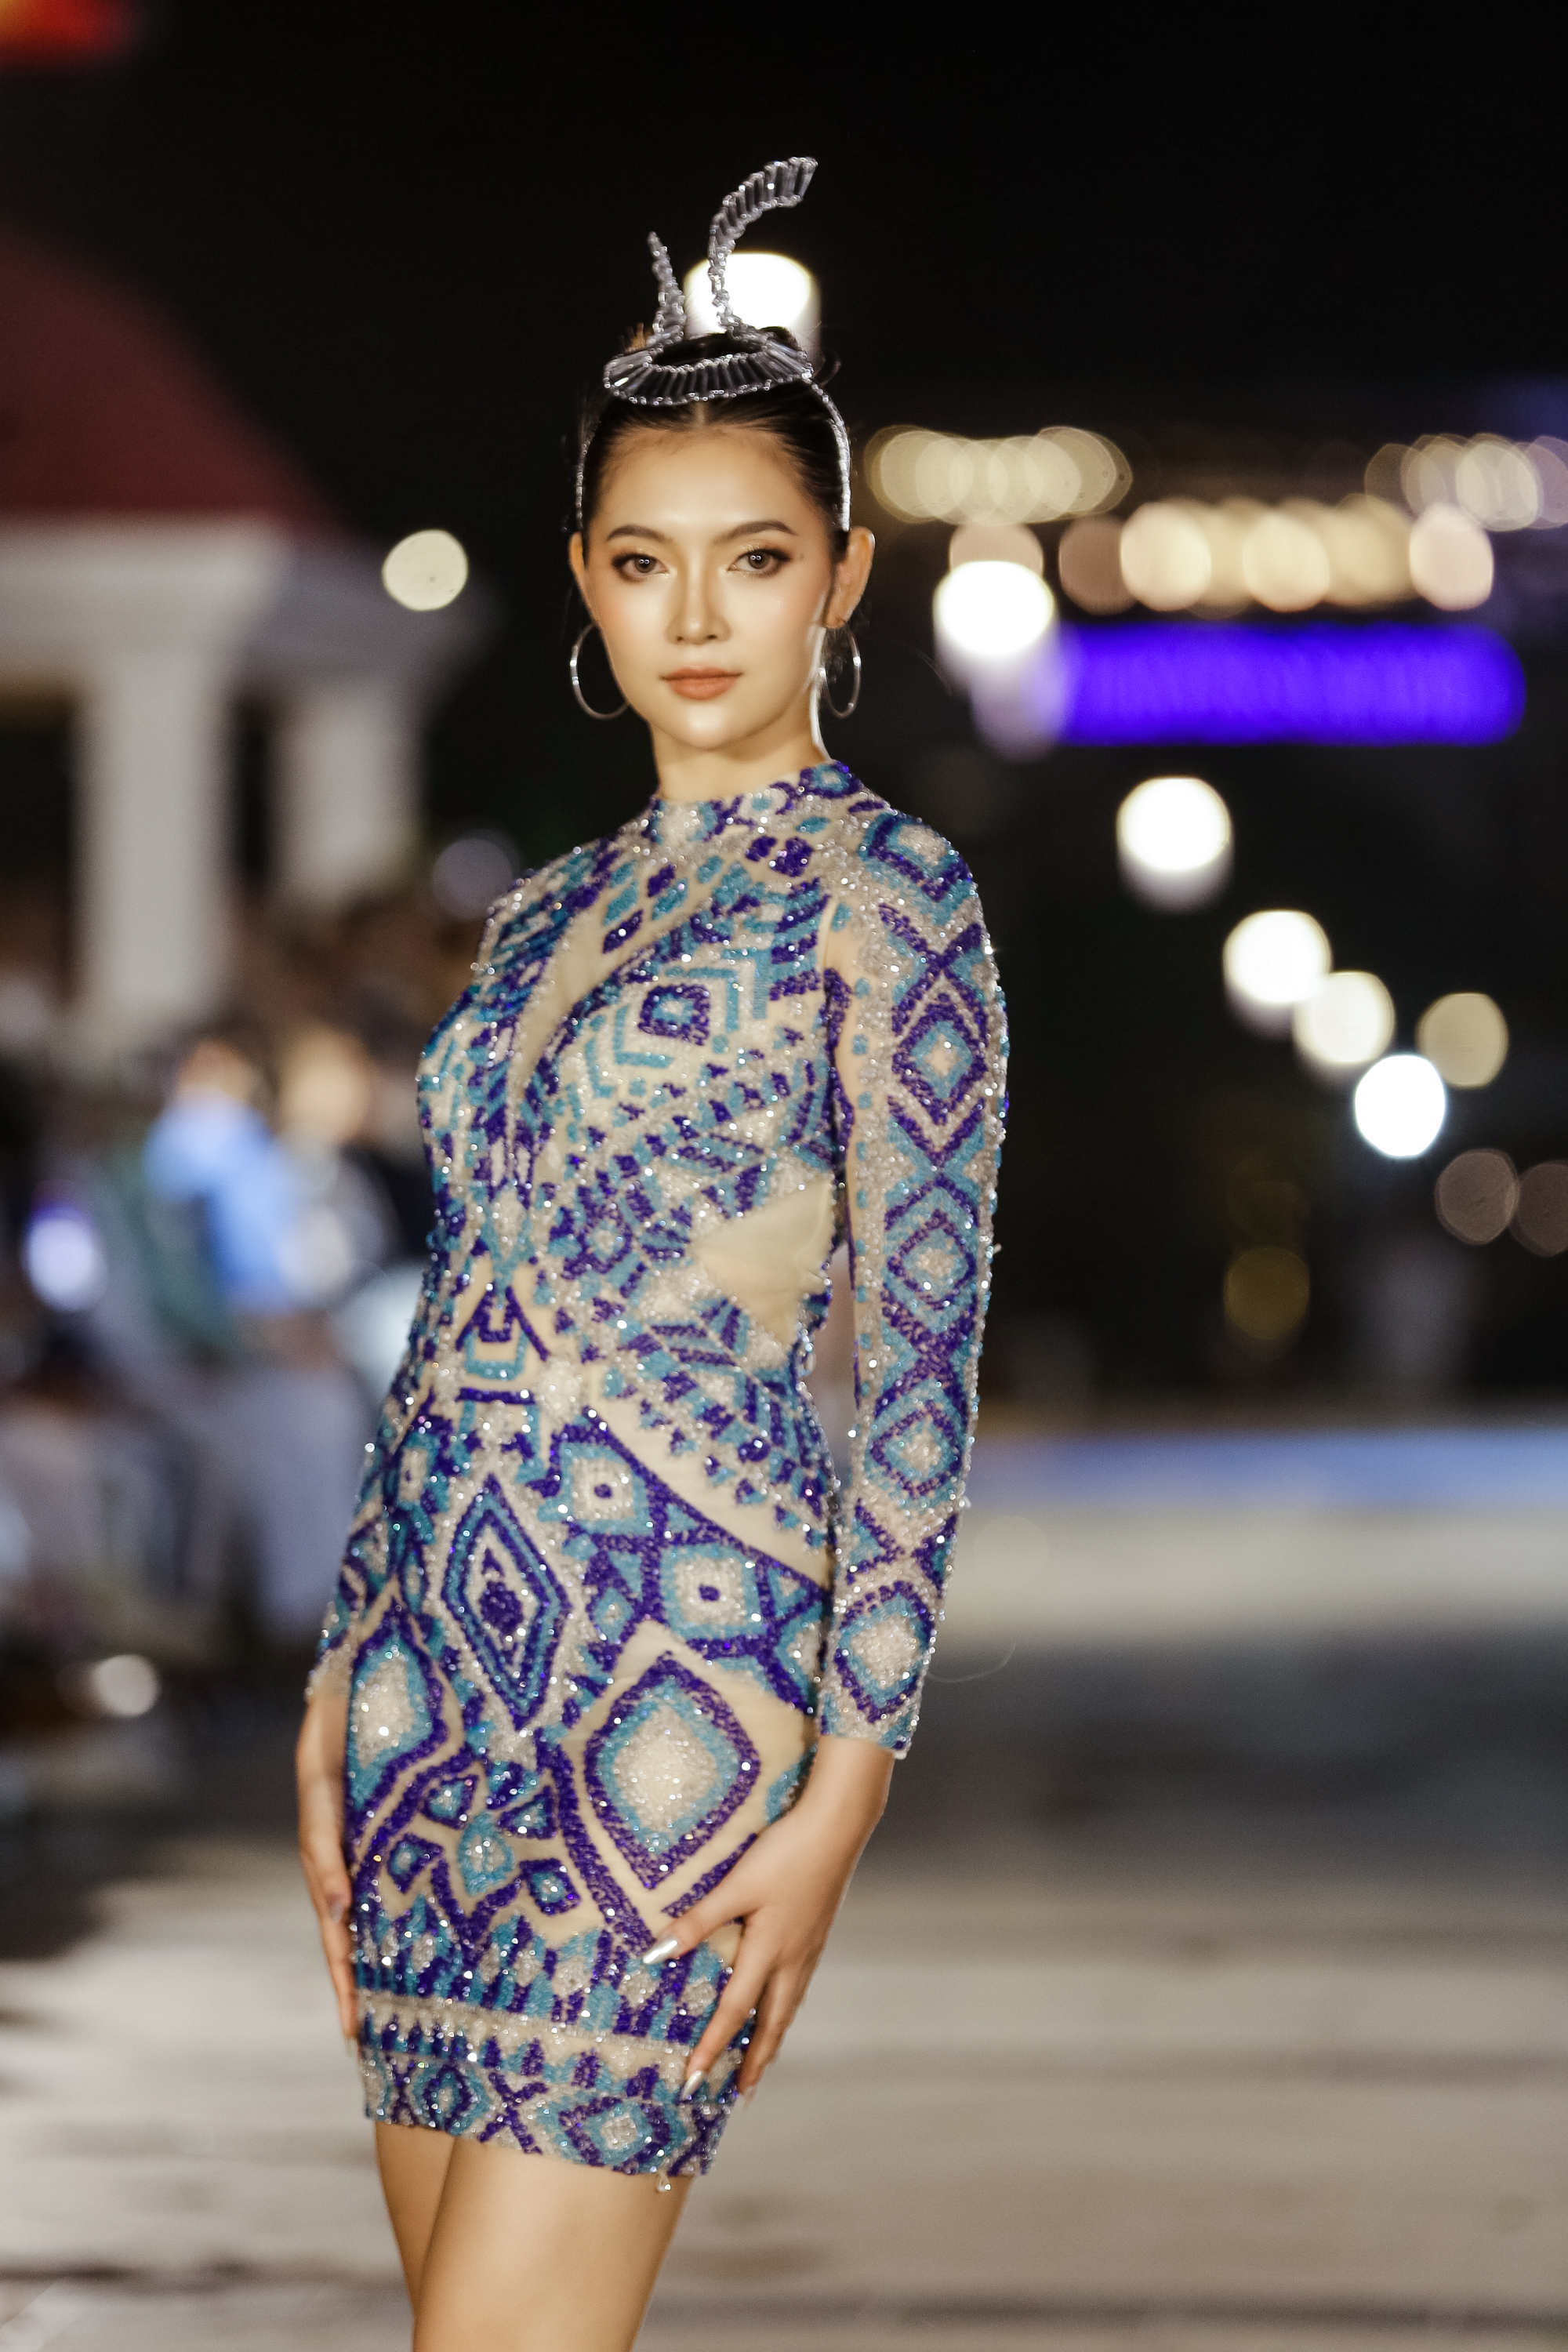 8 mẫu váy local brand Việt “10 điểm không có nhưng”: Nàng sắm diện tiệc  cuối năm đảm bảo slay hết nấc